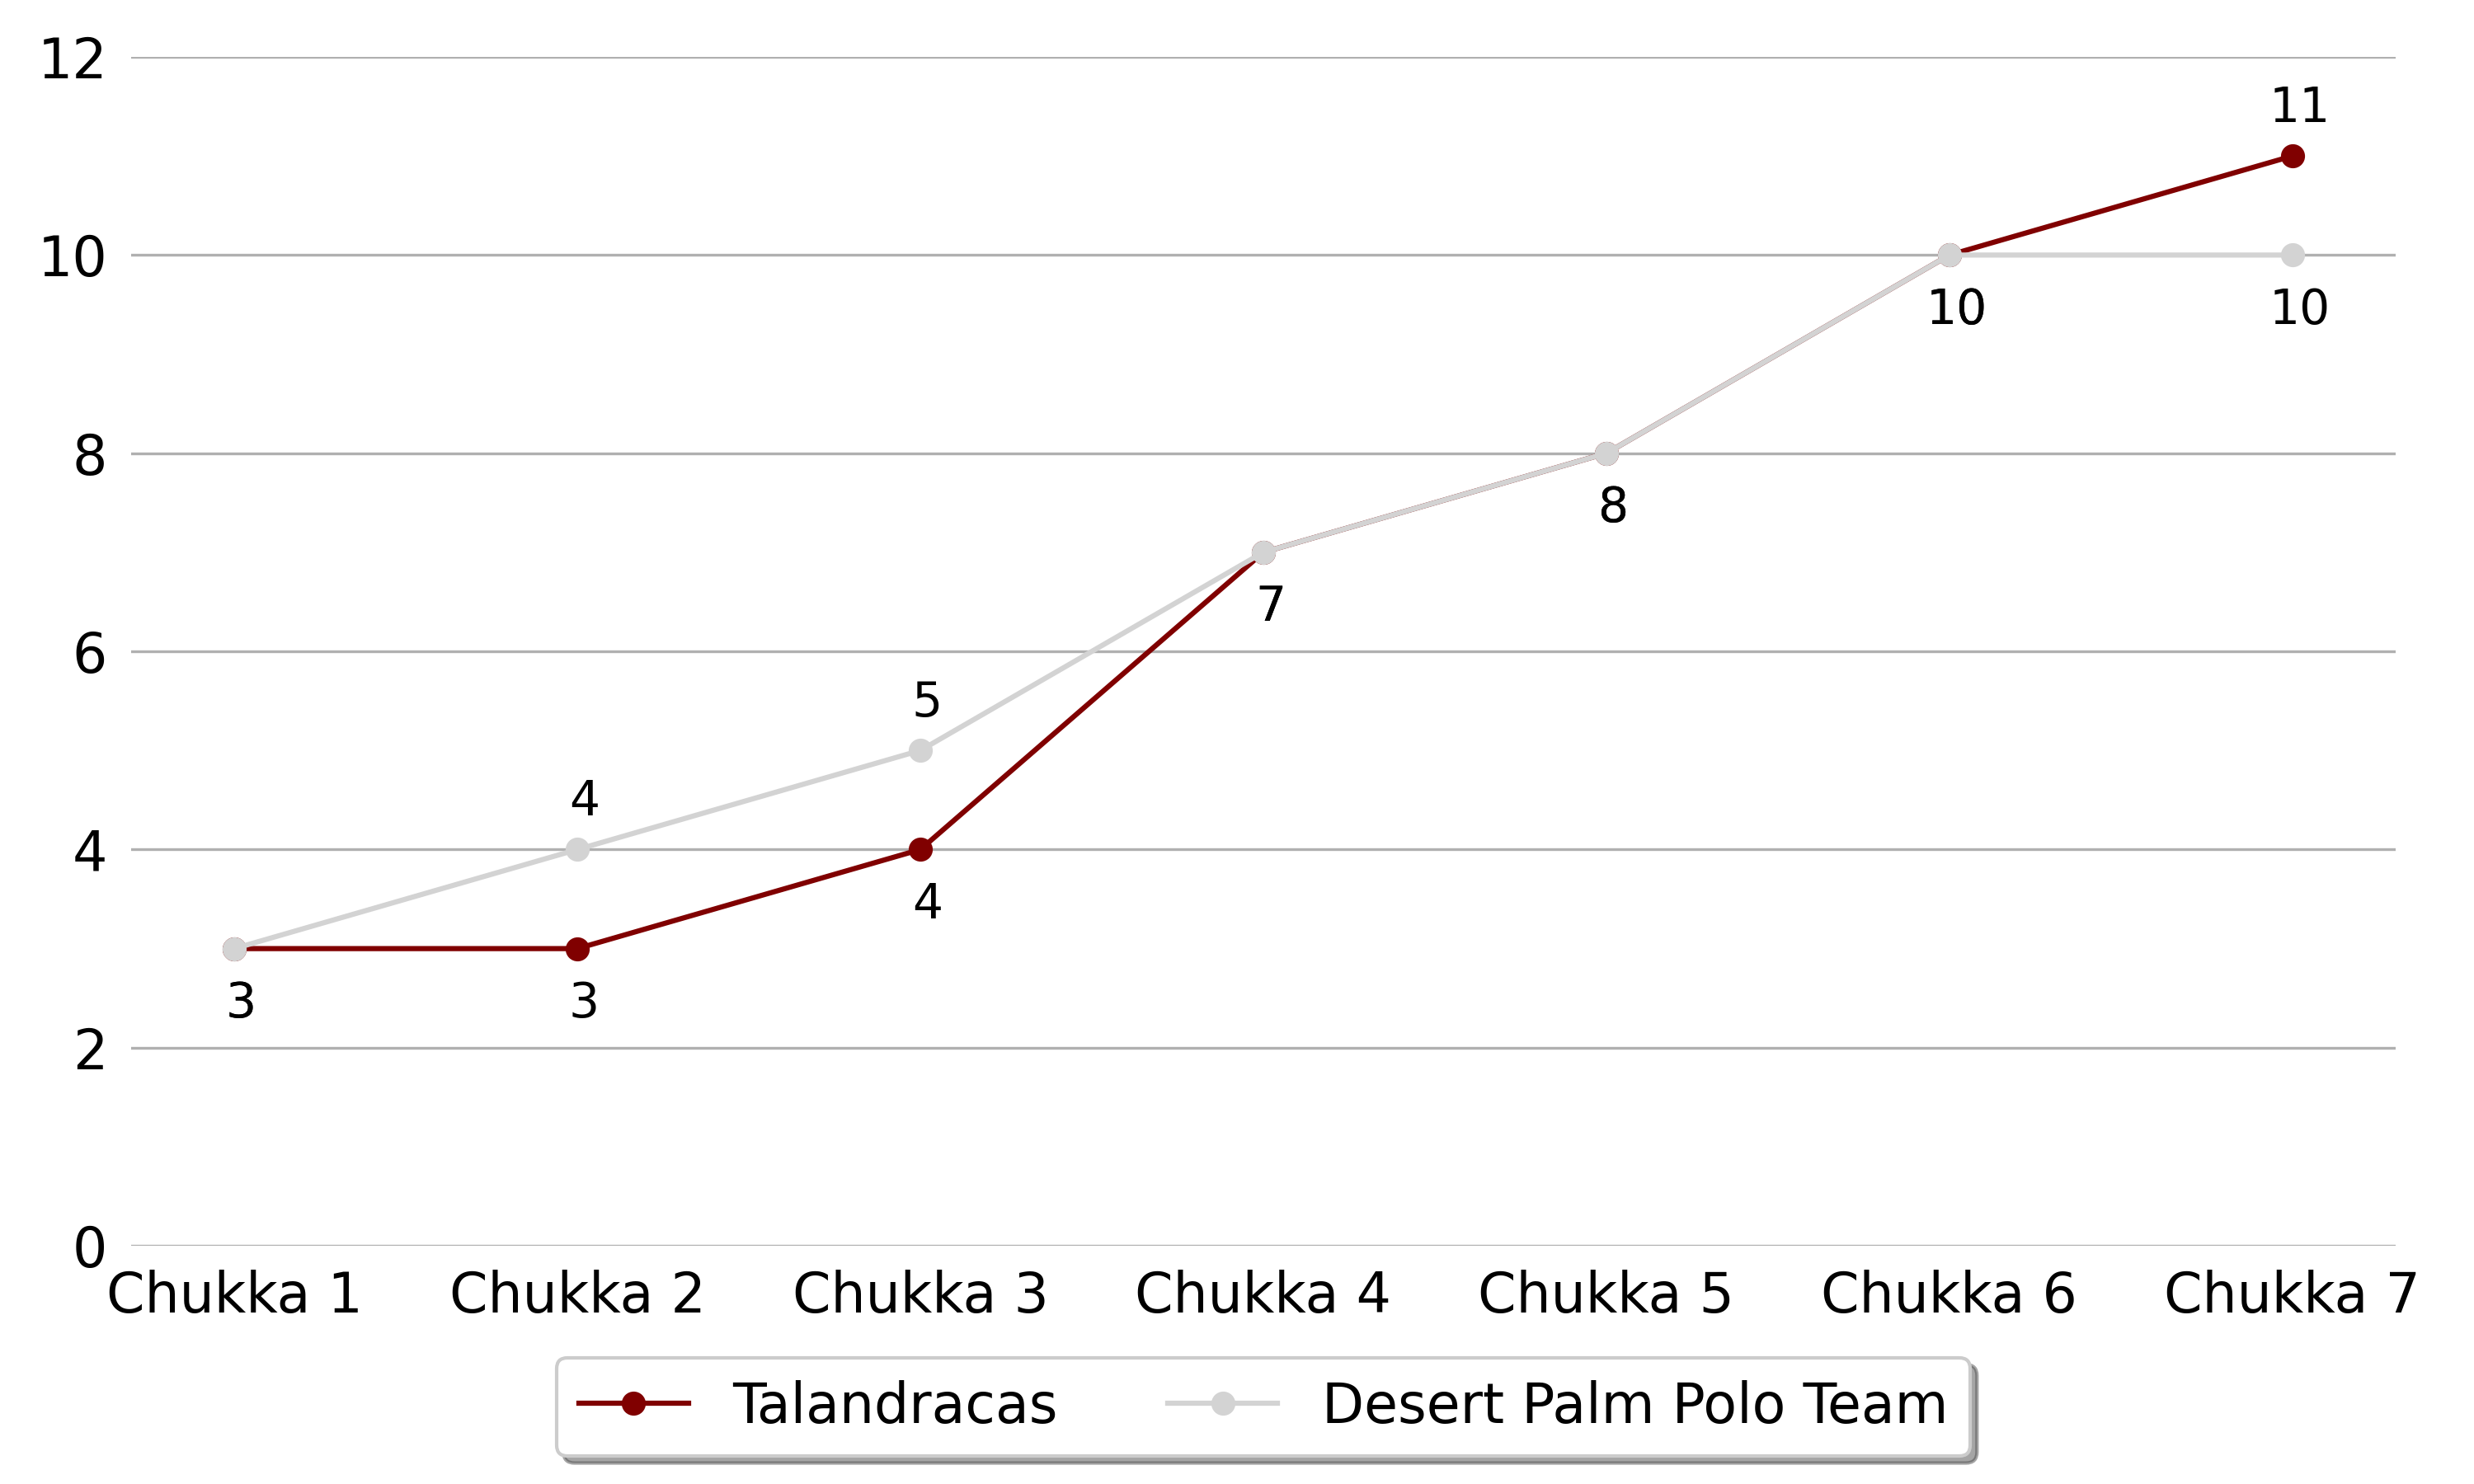 Talandracas won against Desert Palm Polo Team 5